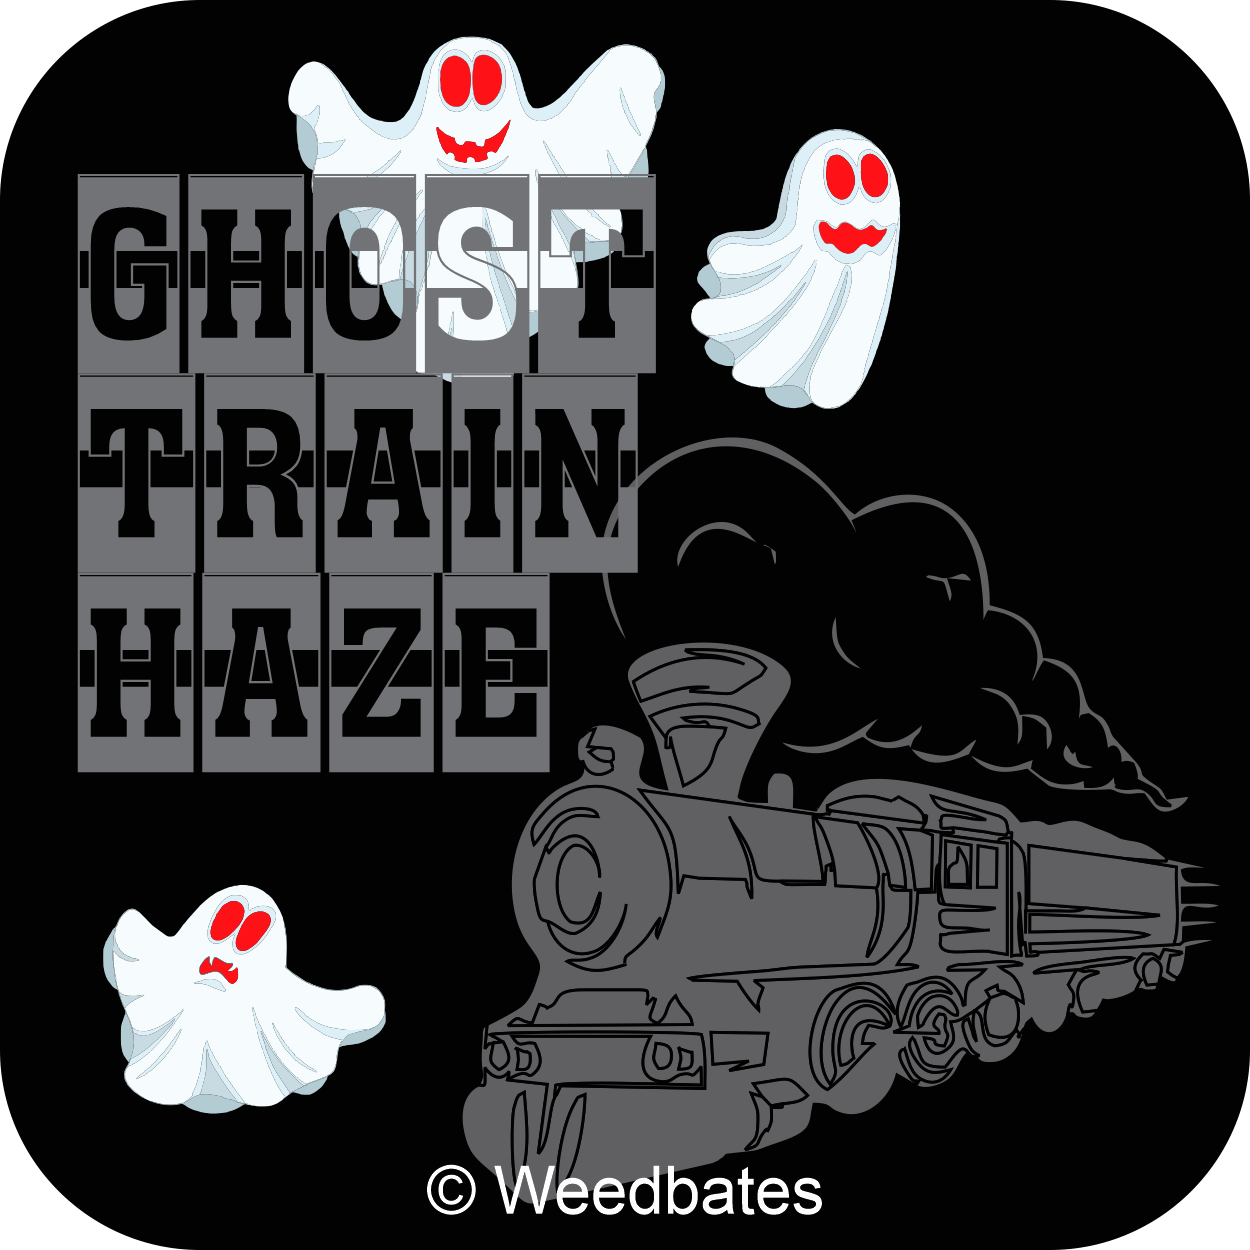 Ghost Train Haze cannabis strain